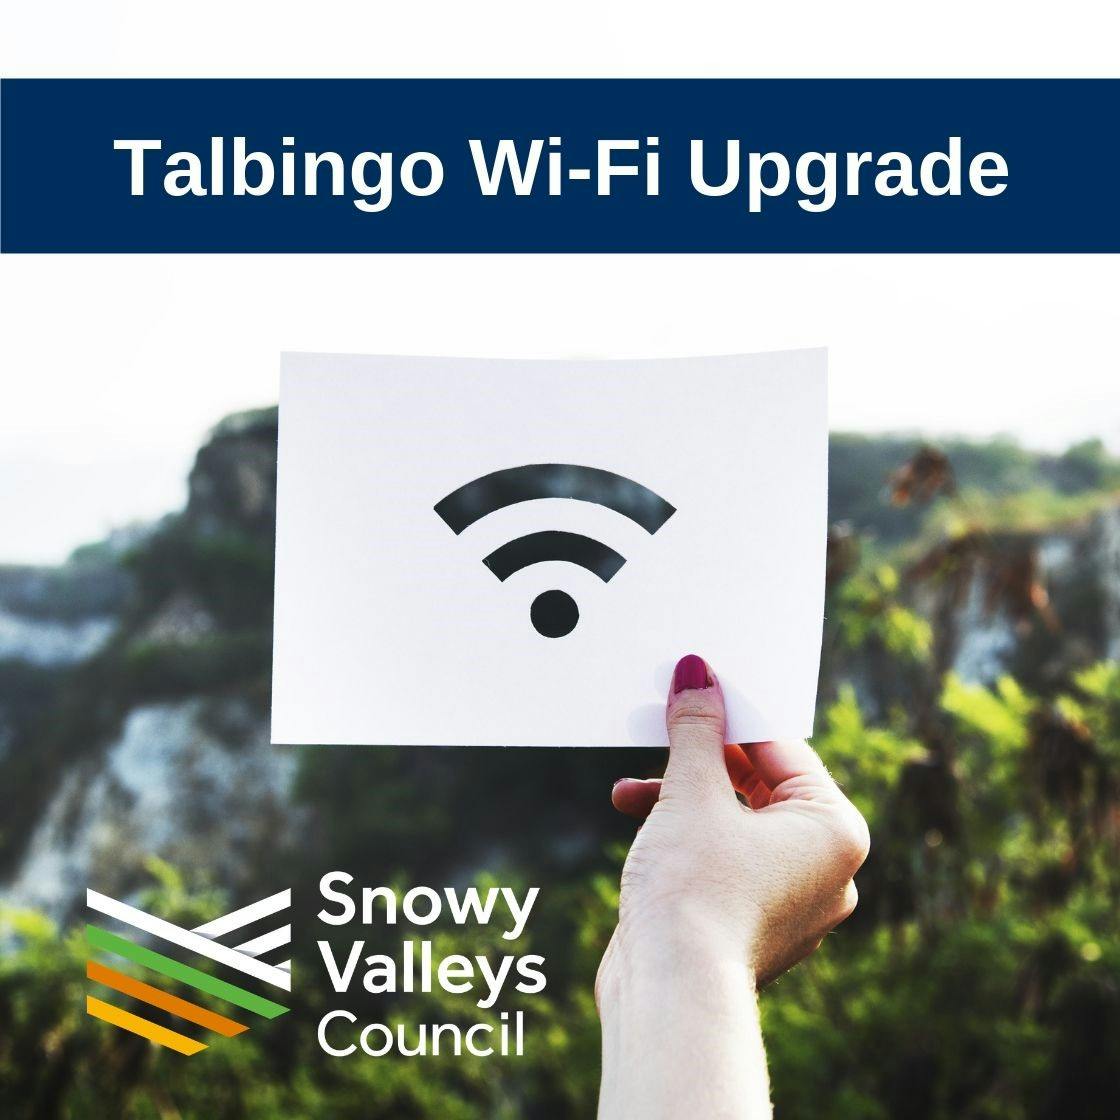 Talbingo Wi-Fi Upgrade